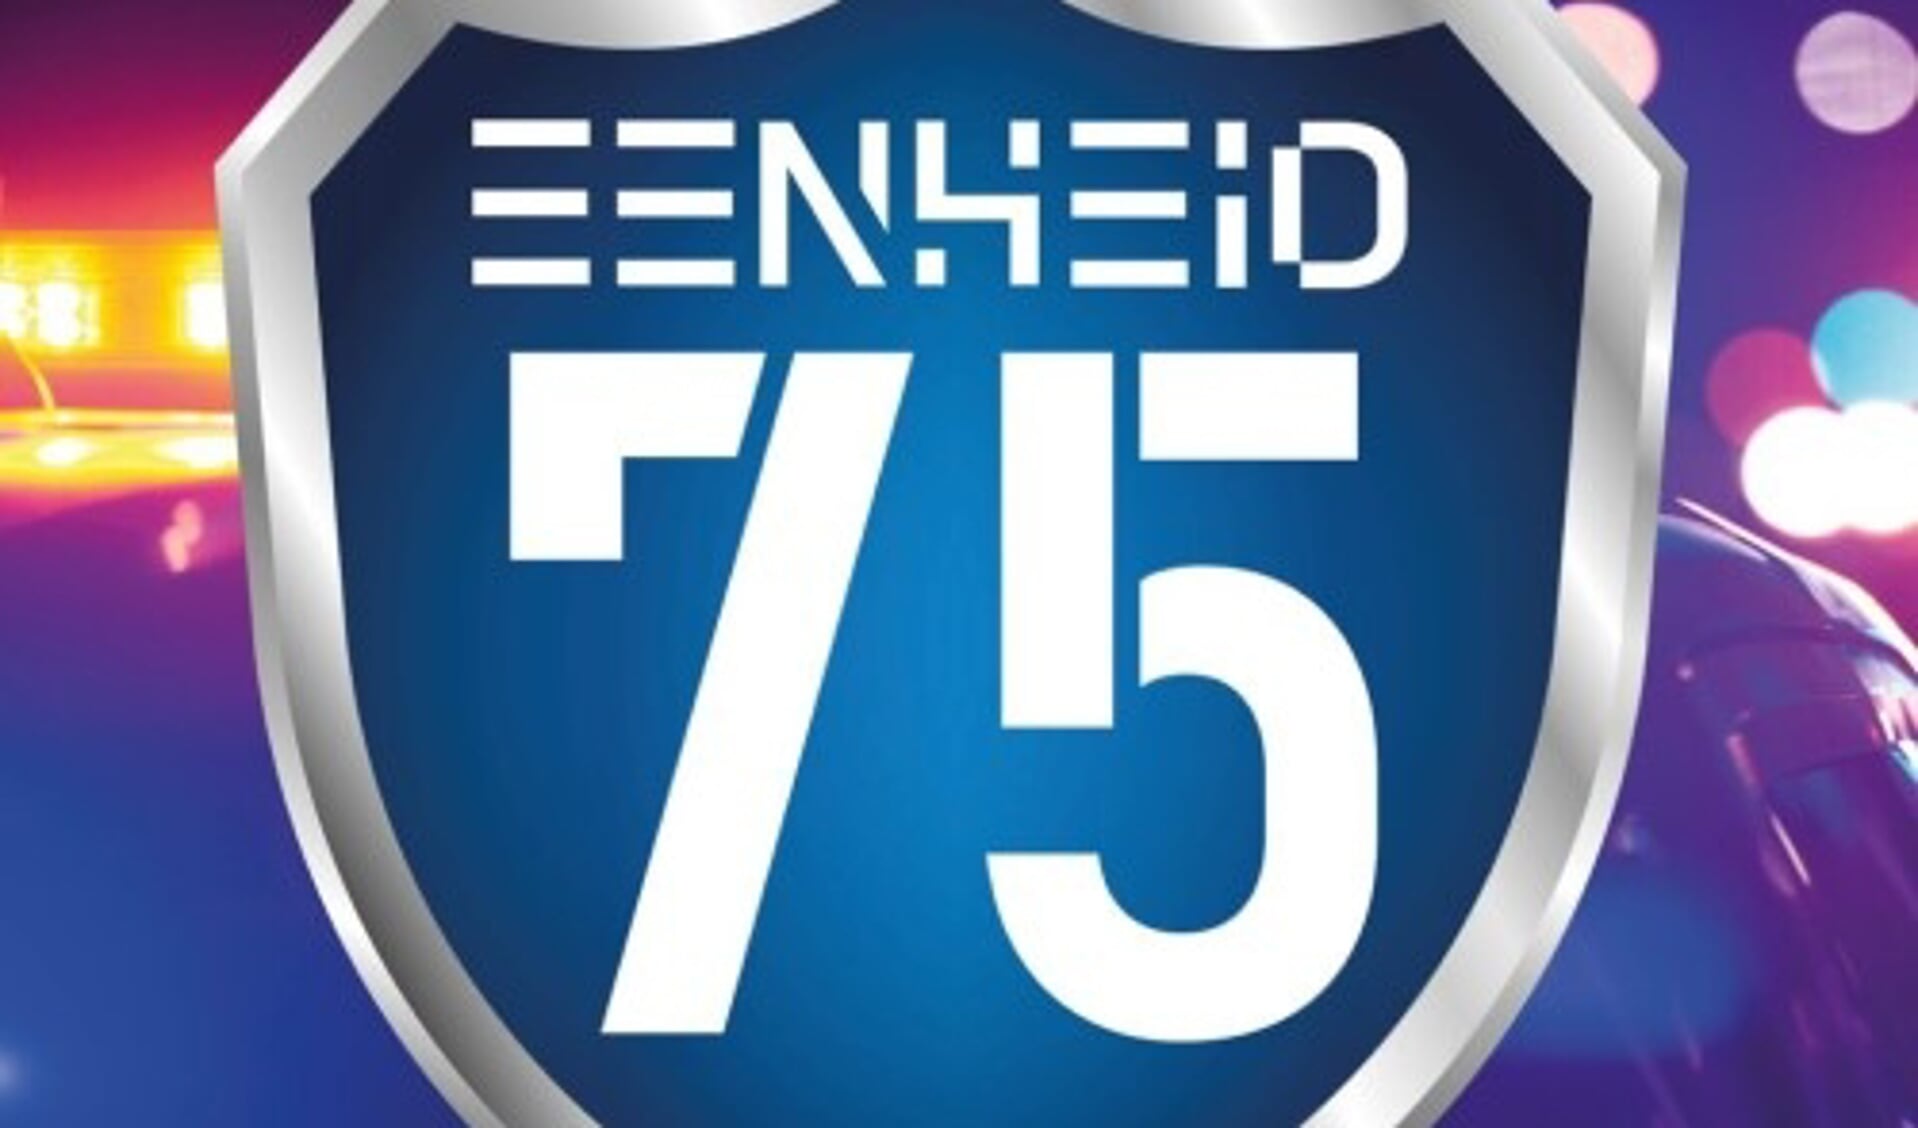 Eenheid75 is een spel dat bestaat uit twee onderdelen. Een augmented reality (AR) app en een escaperoom.